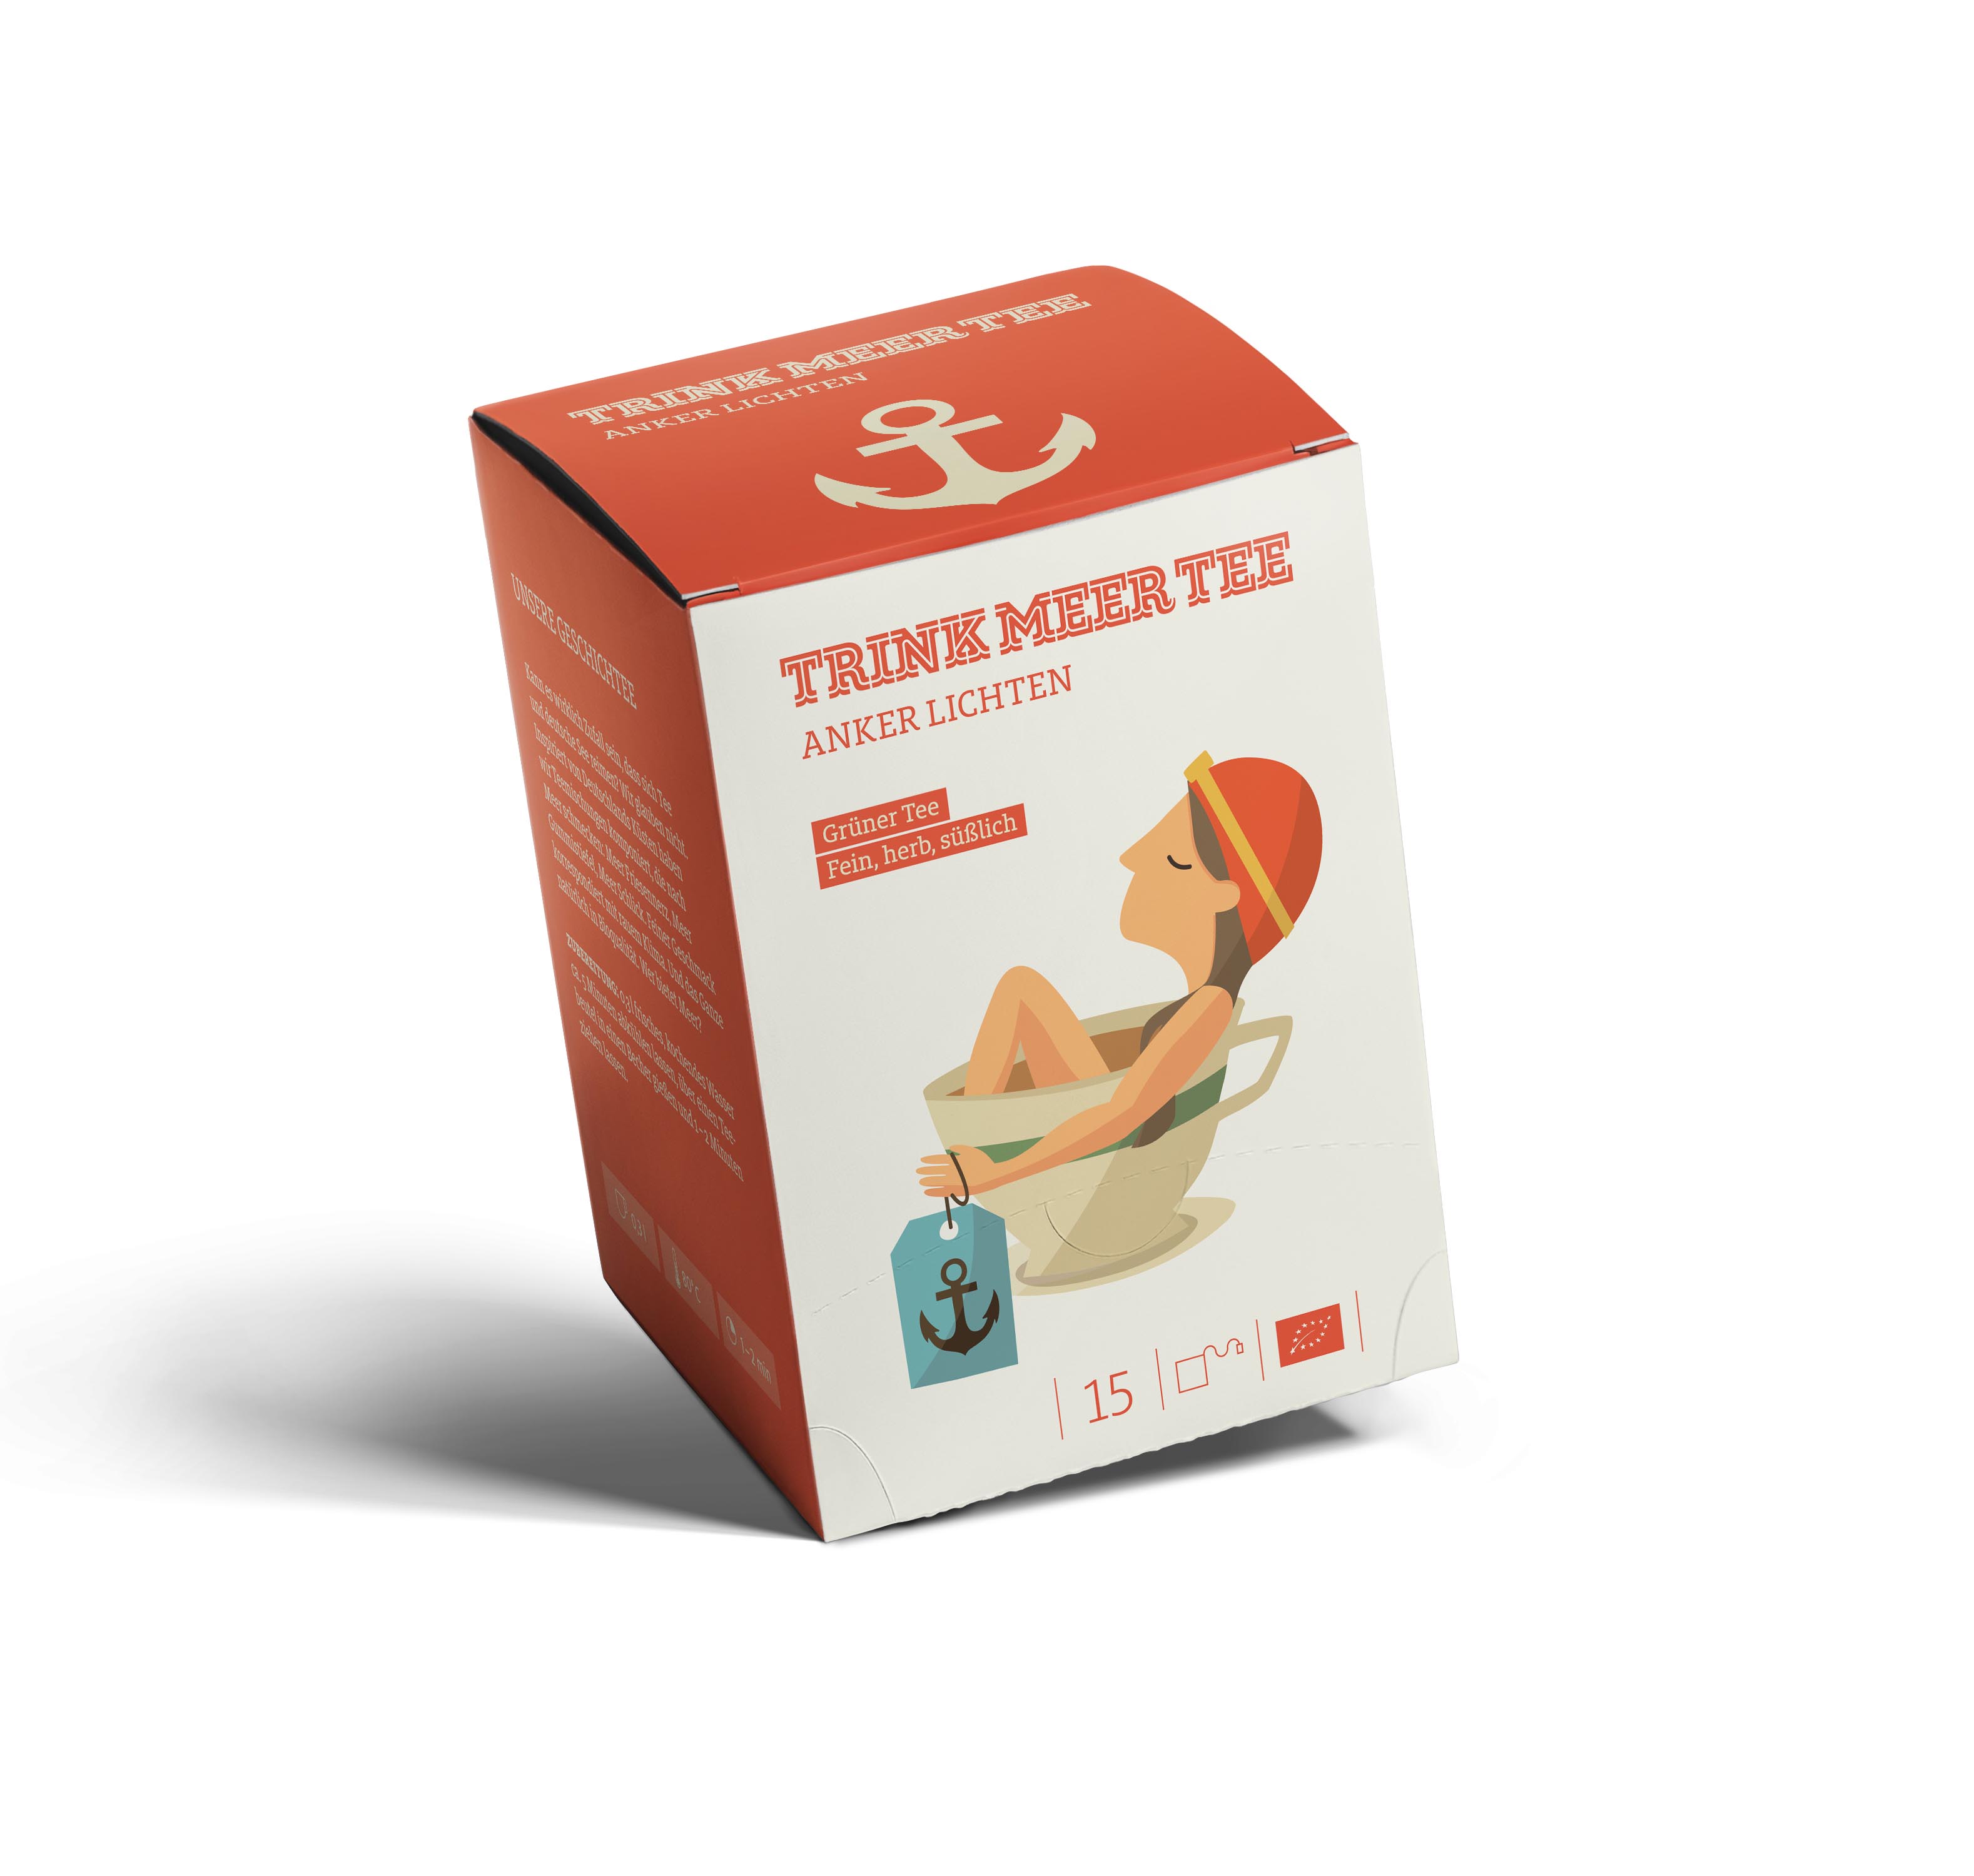 Teebeutel "Anker Lichten" - Grüner Tee TRINK MEER TEE